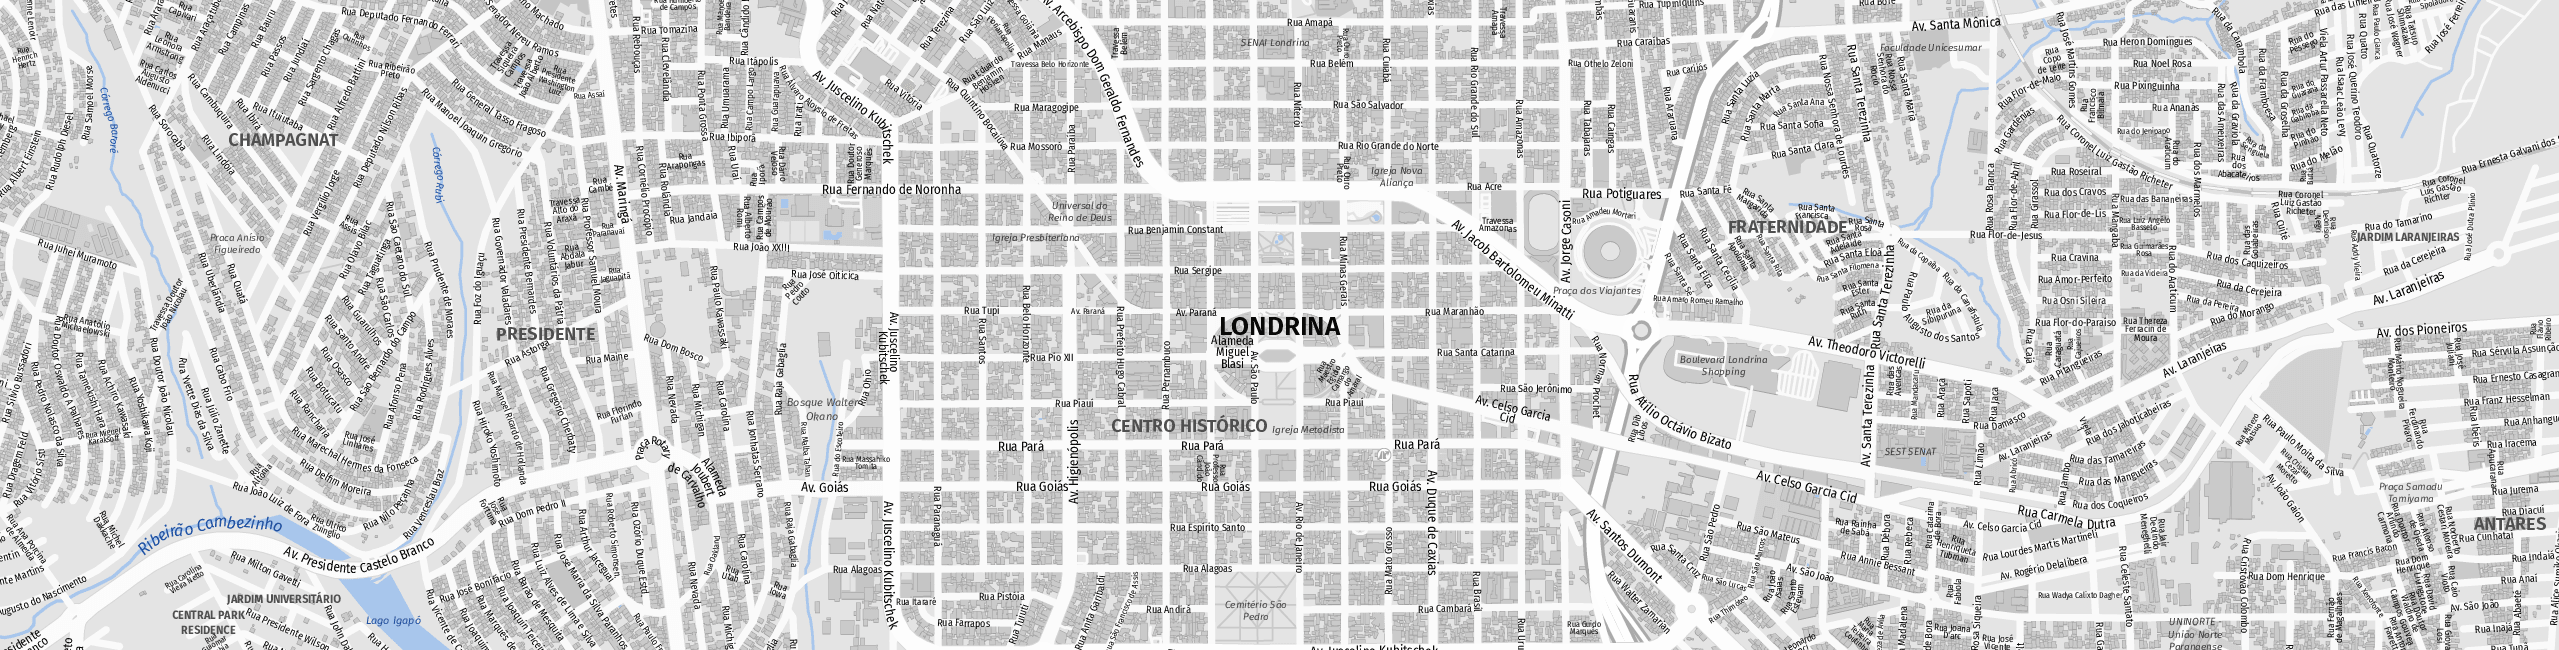 Stadtplan Londrina zum Downloaden.